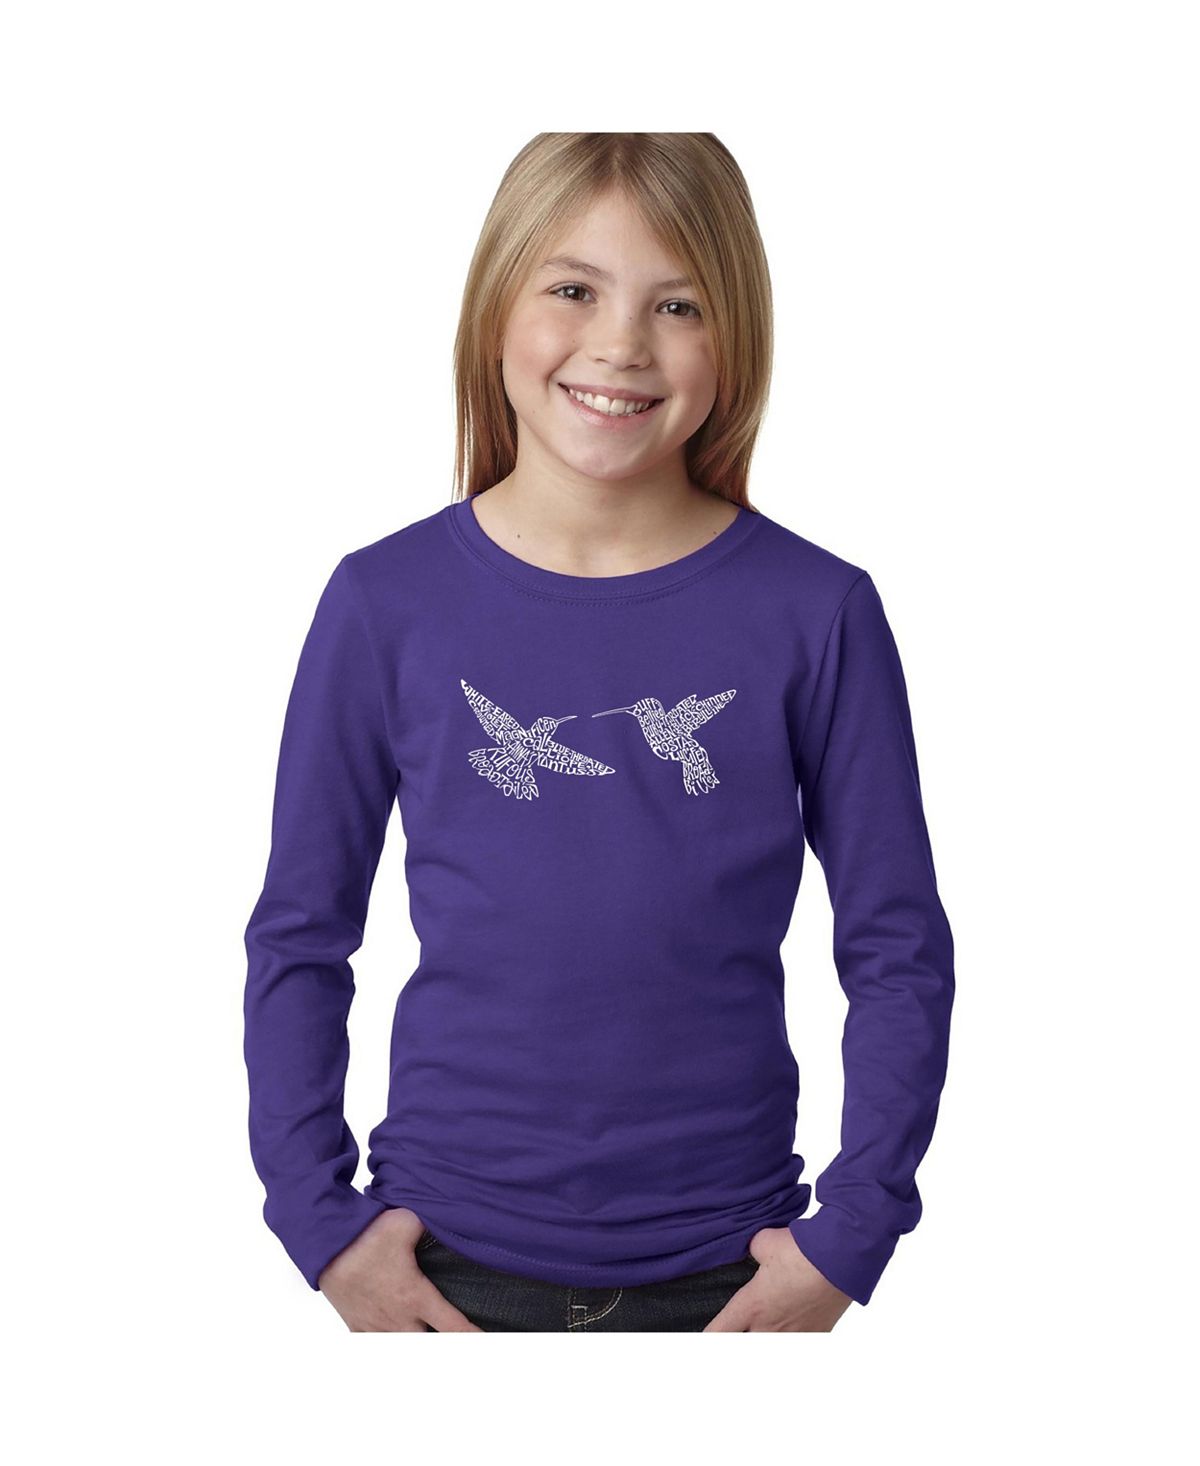 Колибри — детская футболка с длинными рукавами и надписью «Колибри» для девочек LA Pop Art